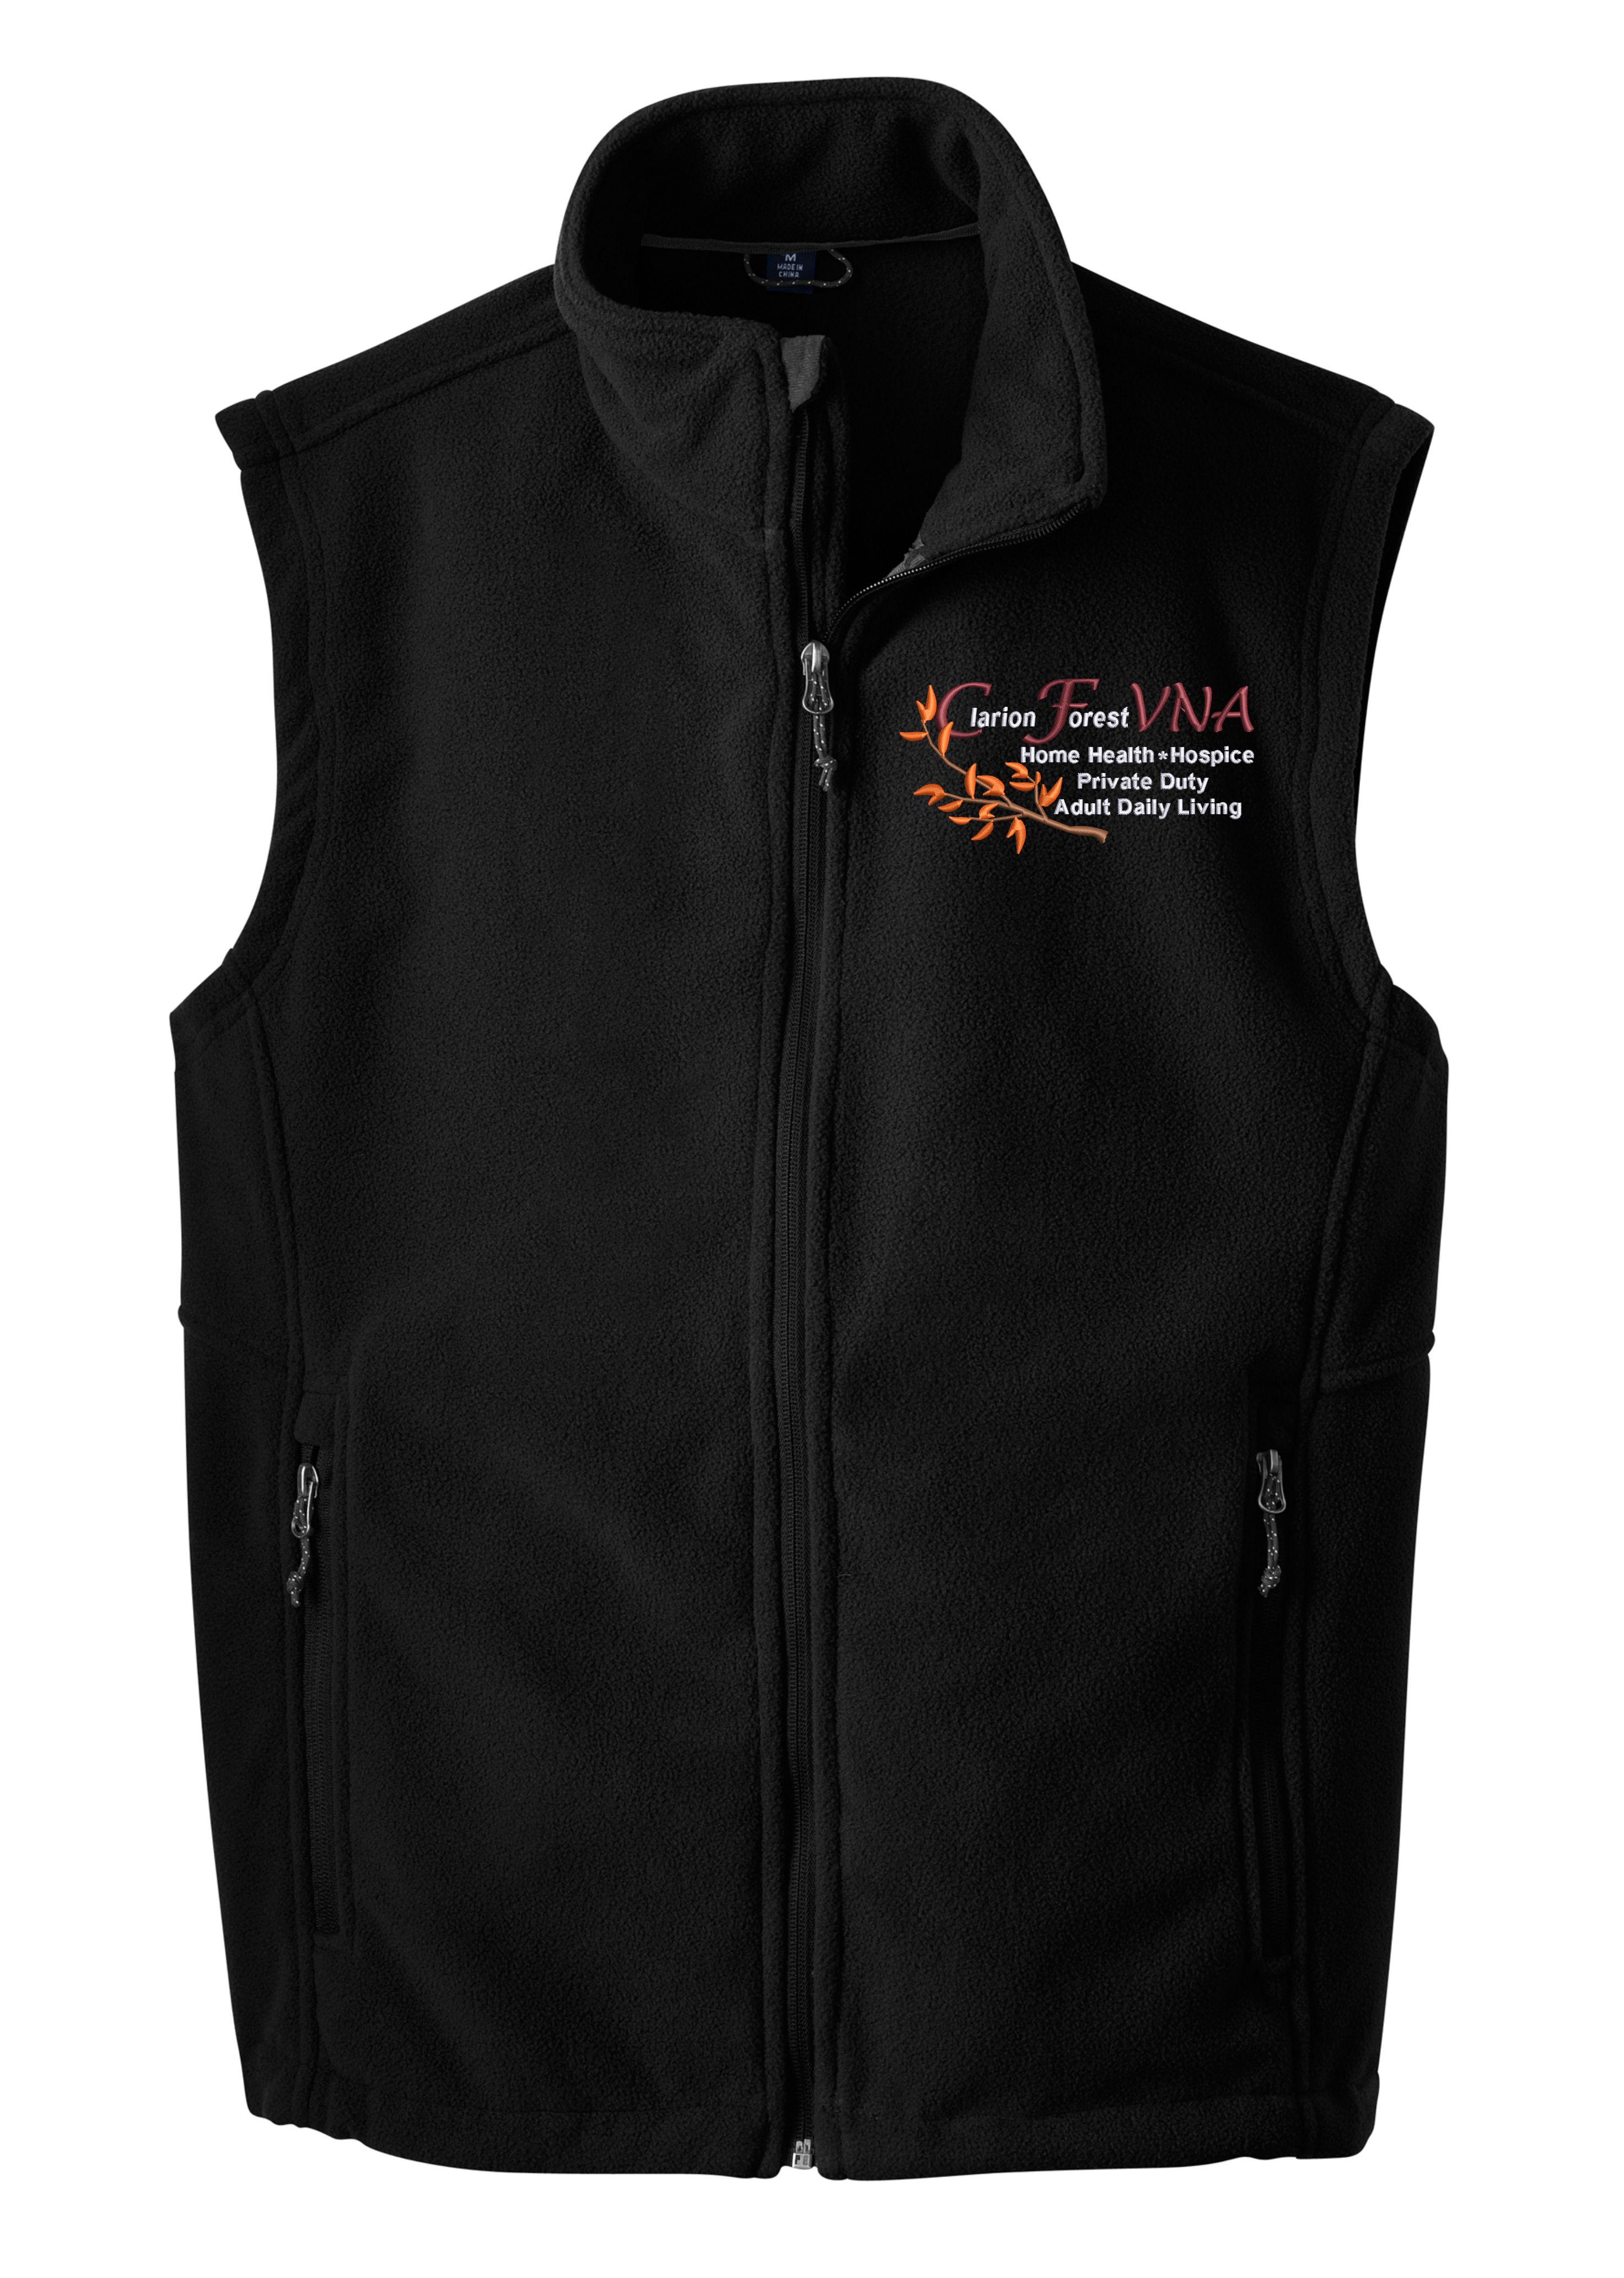 Clarion Forest Embroidered VNA Men's Fleece Vest 